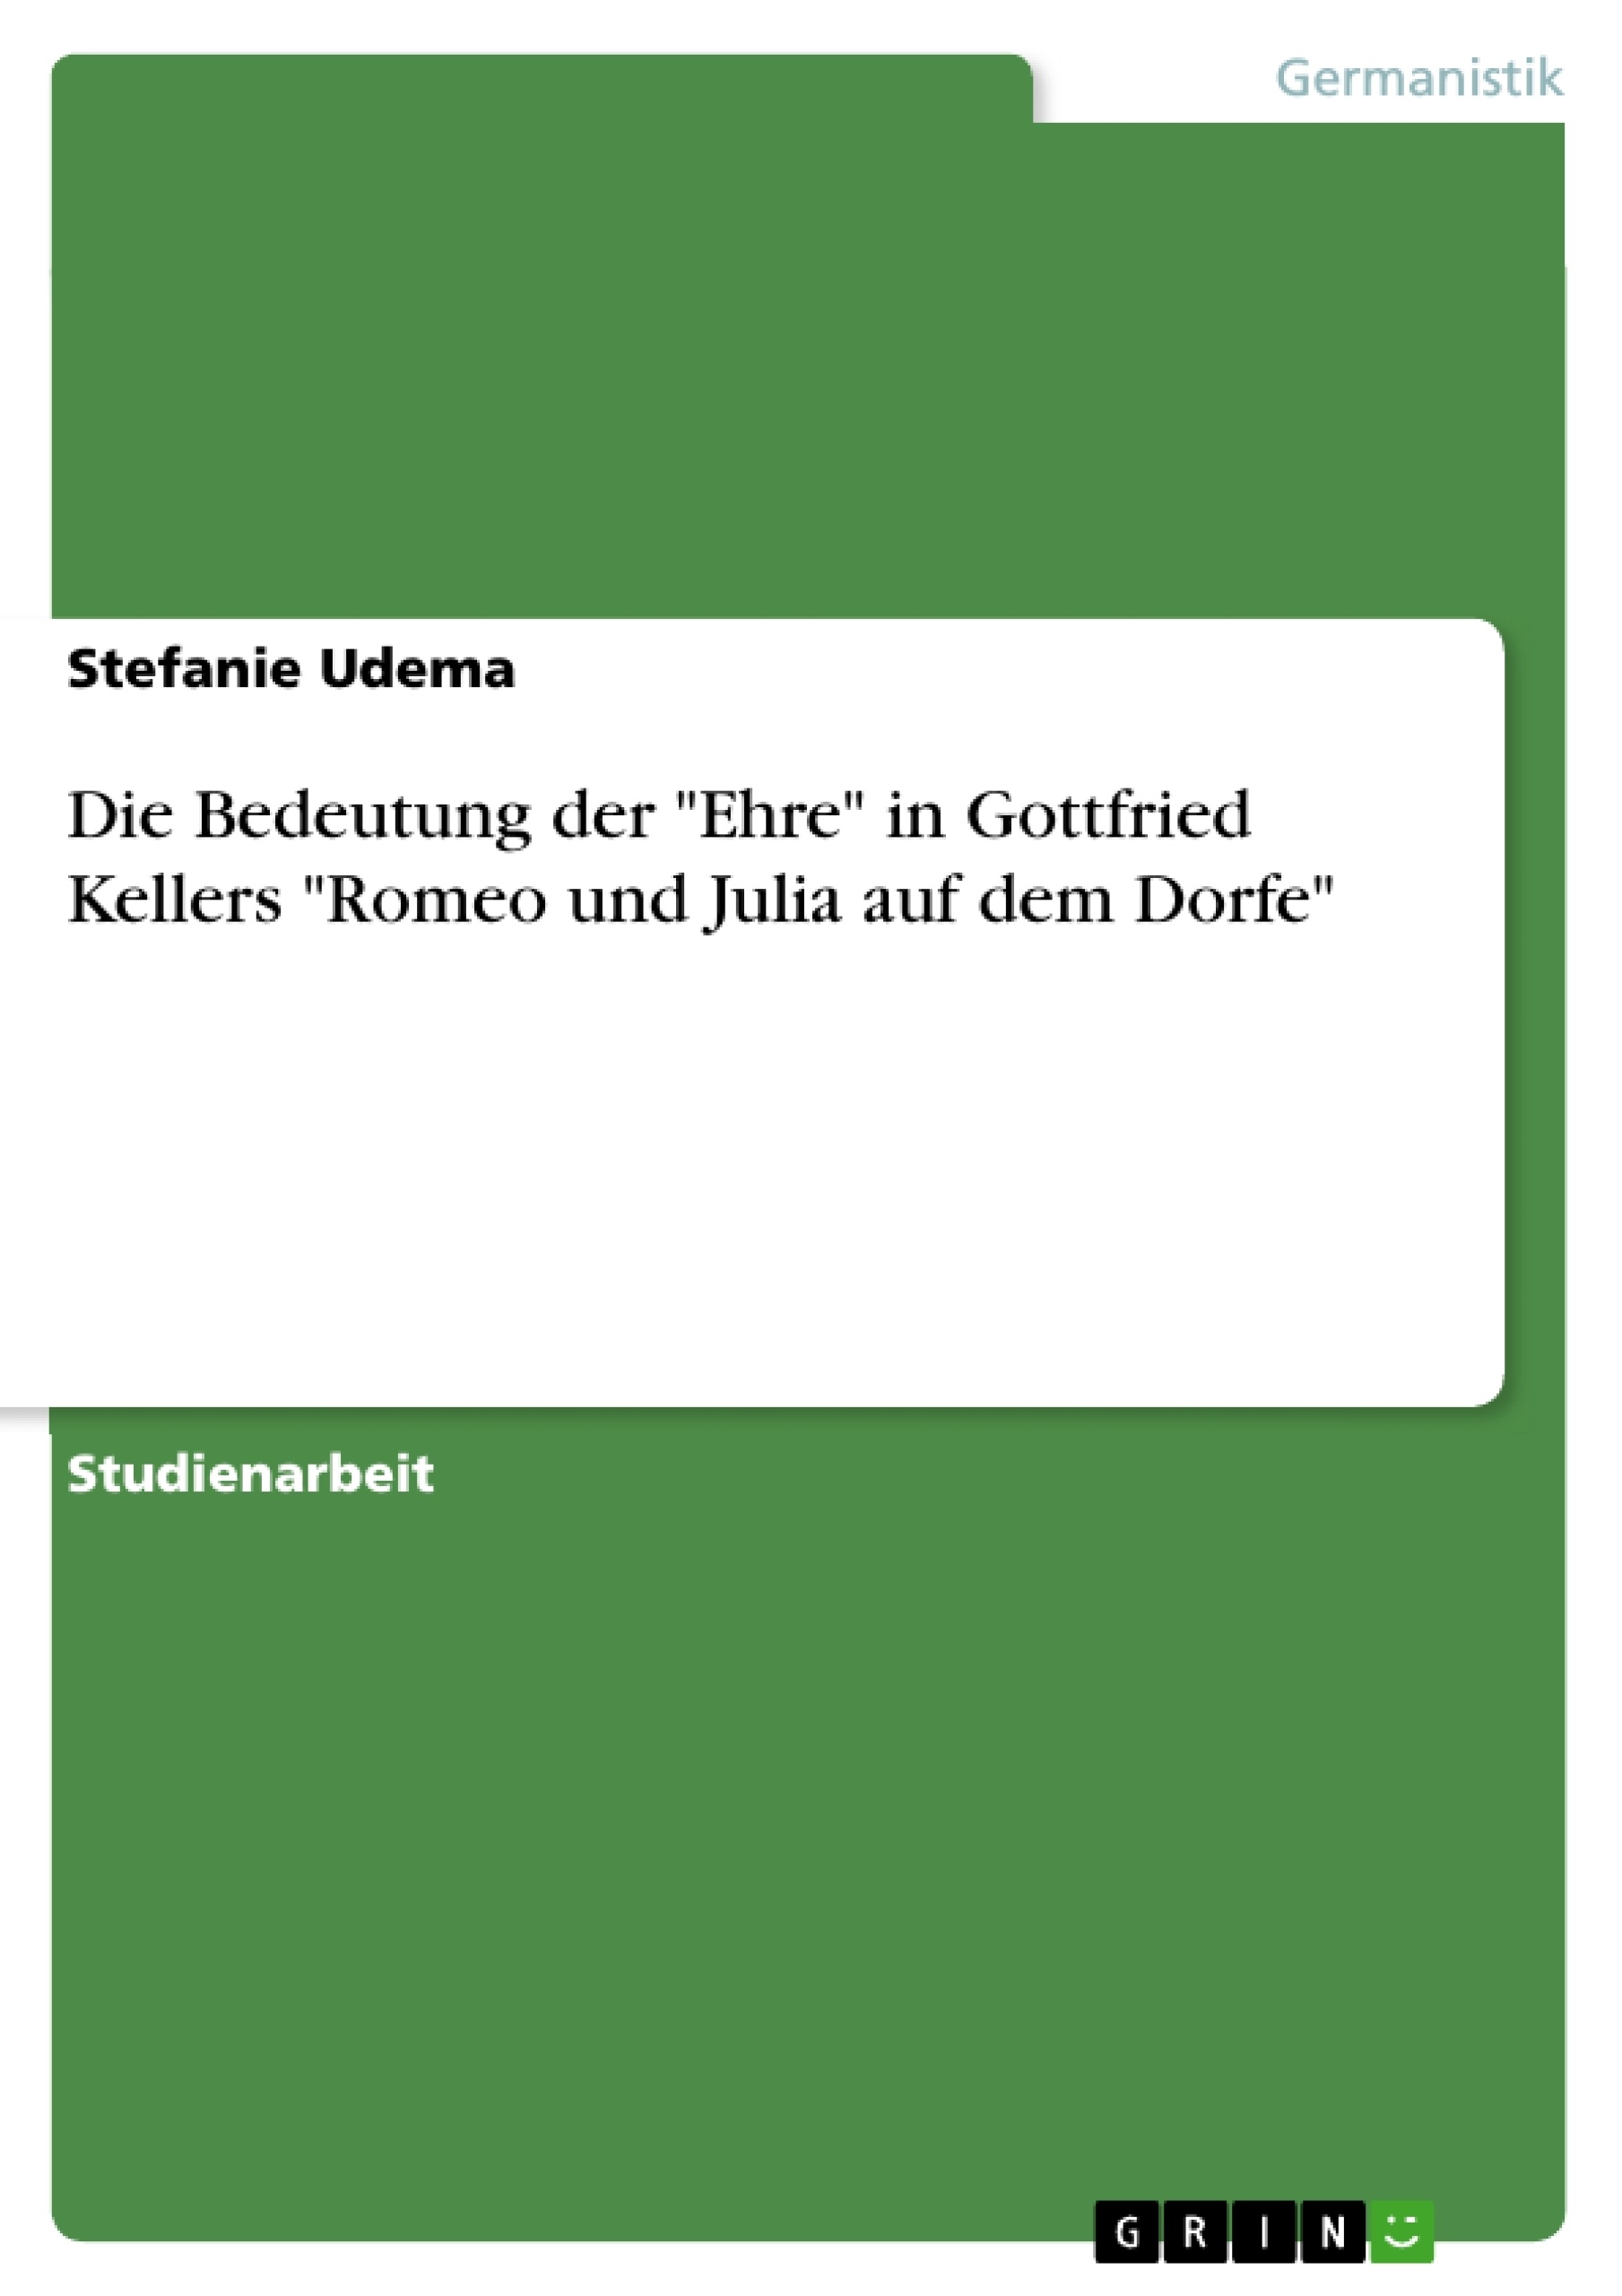 Titre: Die Bedeutung der "Ehre" in Gottfried Kellers "Romeo und Julia auf dem Dorfe"